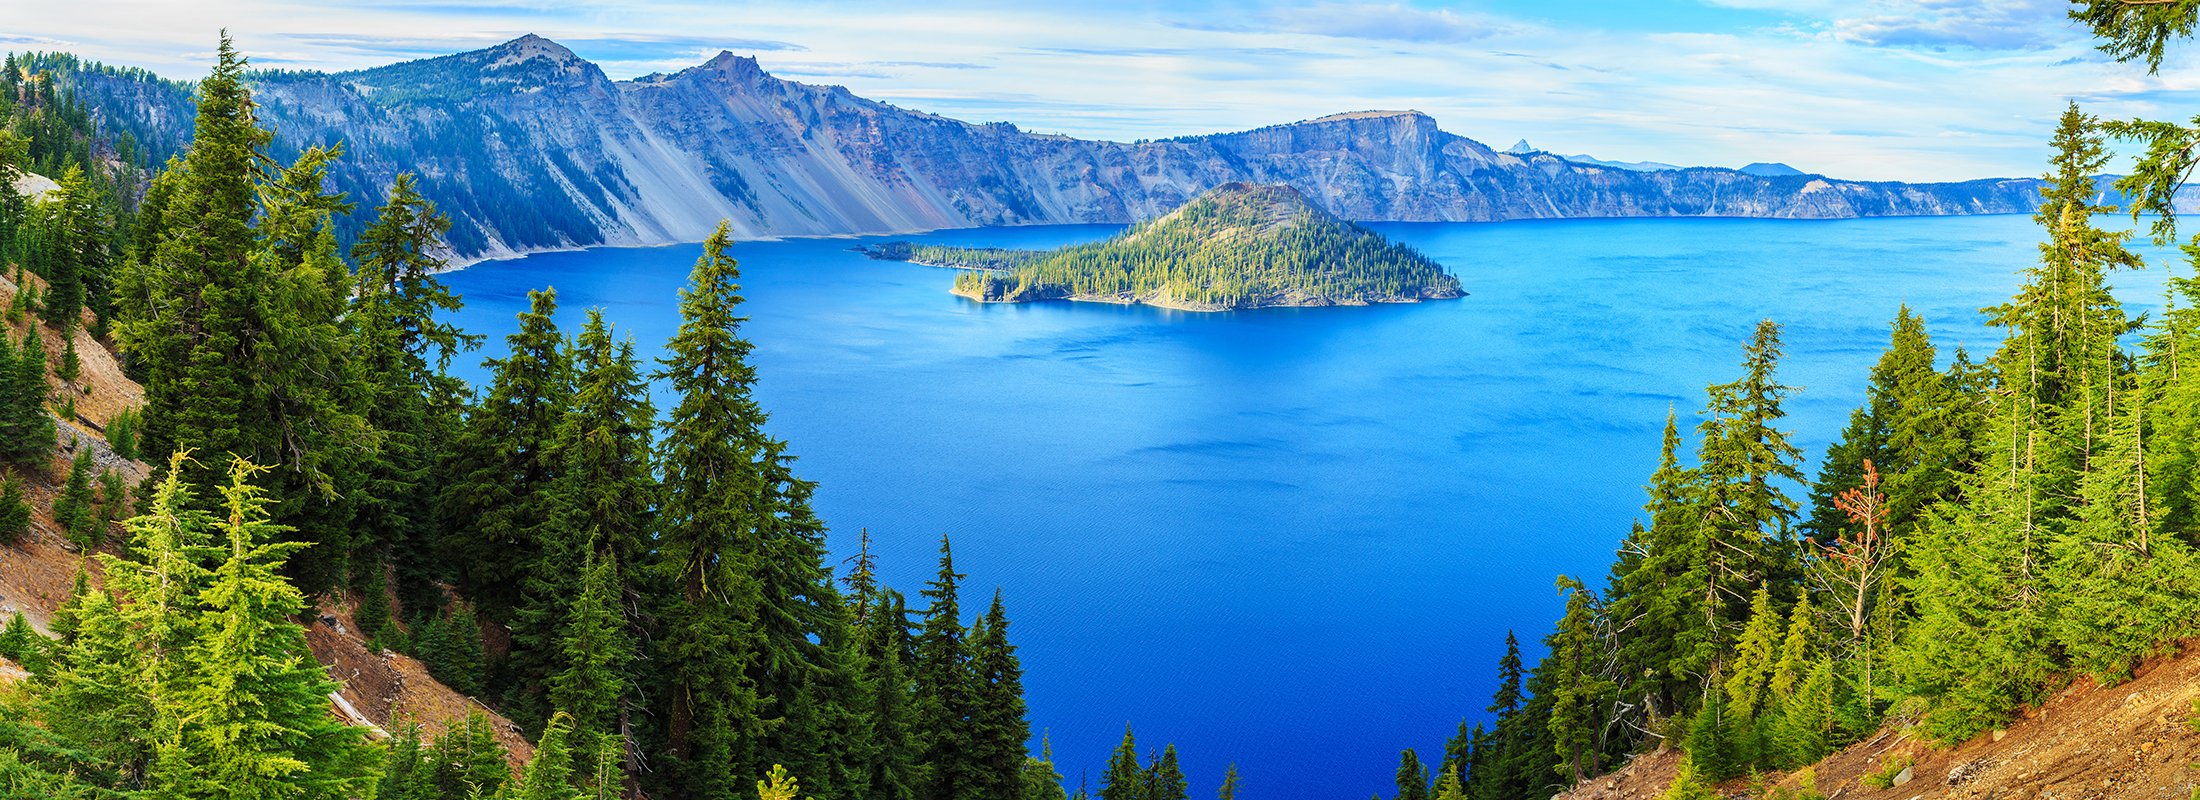 Самое маленькое озеро в америке. Озеро Крейтер, Орегон, США. Озеро Крейтер, штат Орегон. Парк озеро Крейтер в Северной Америке. Орегон красивые места.